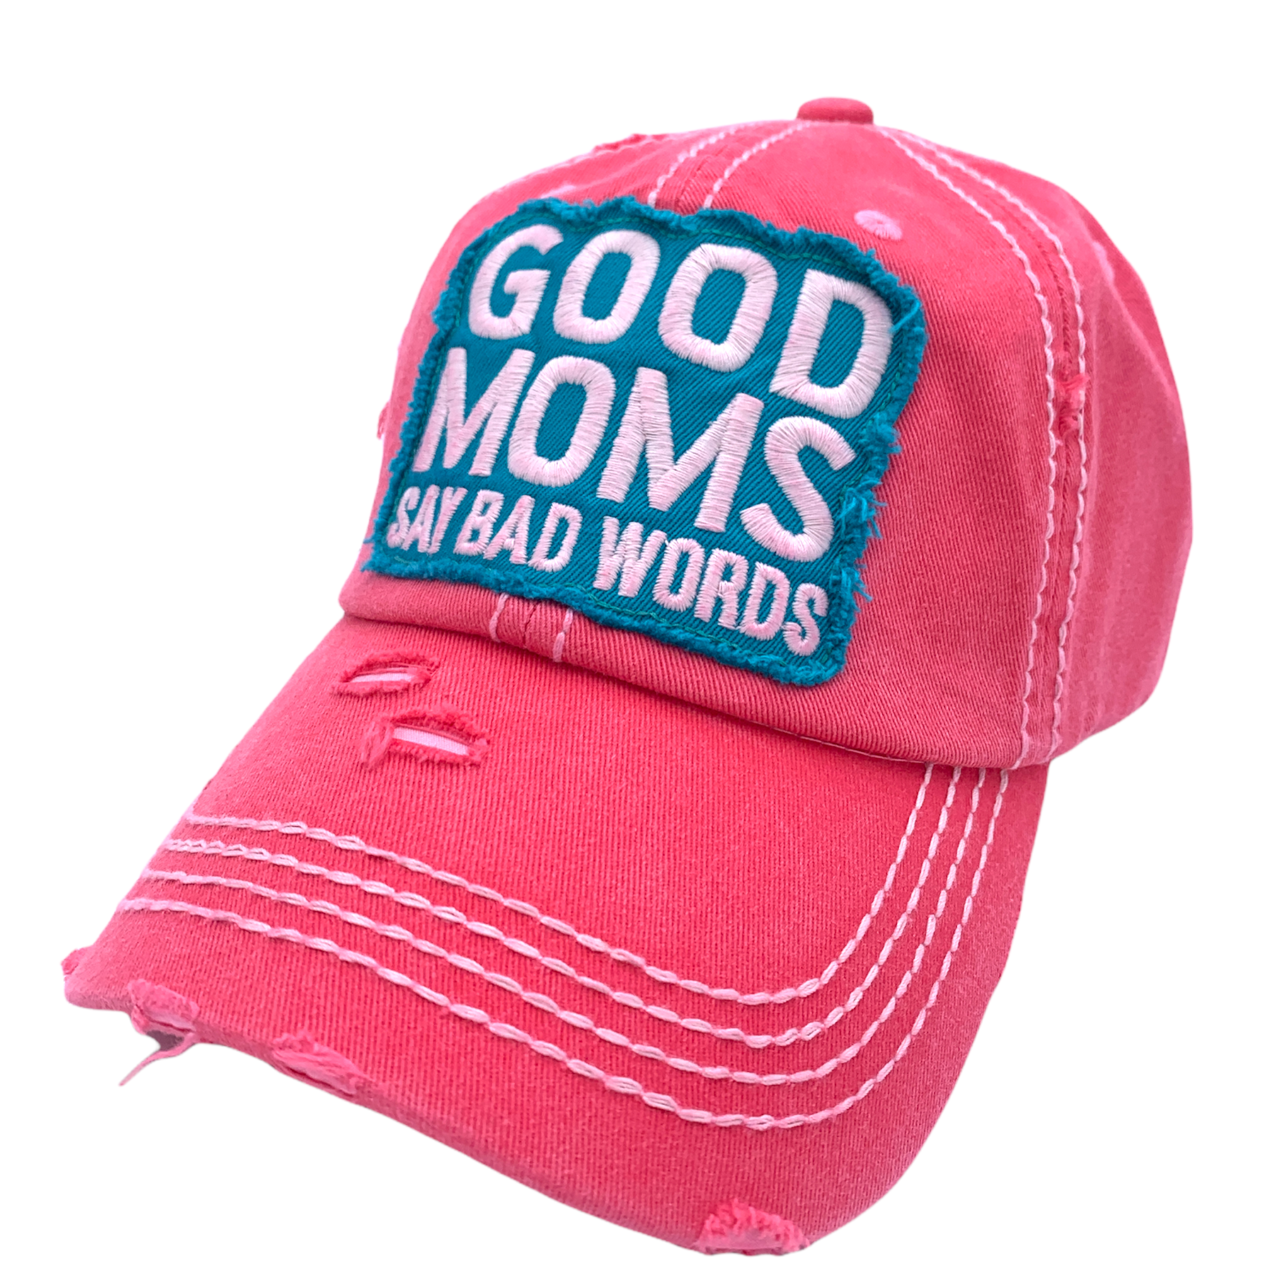 KBV-1369 Good Moms Hot Pink